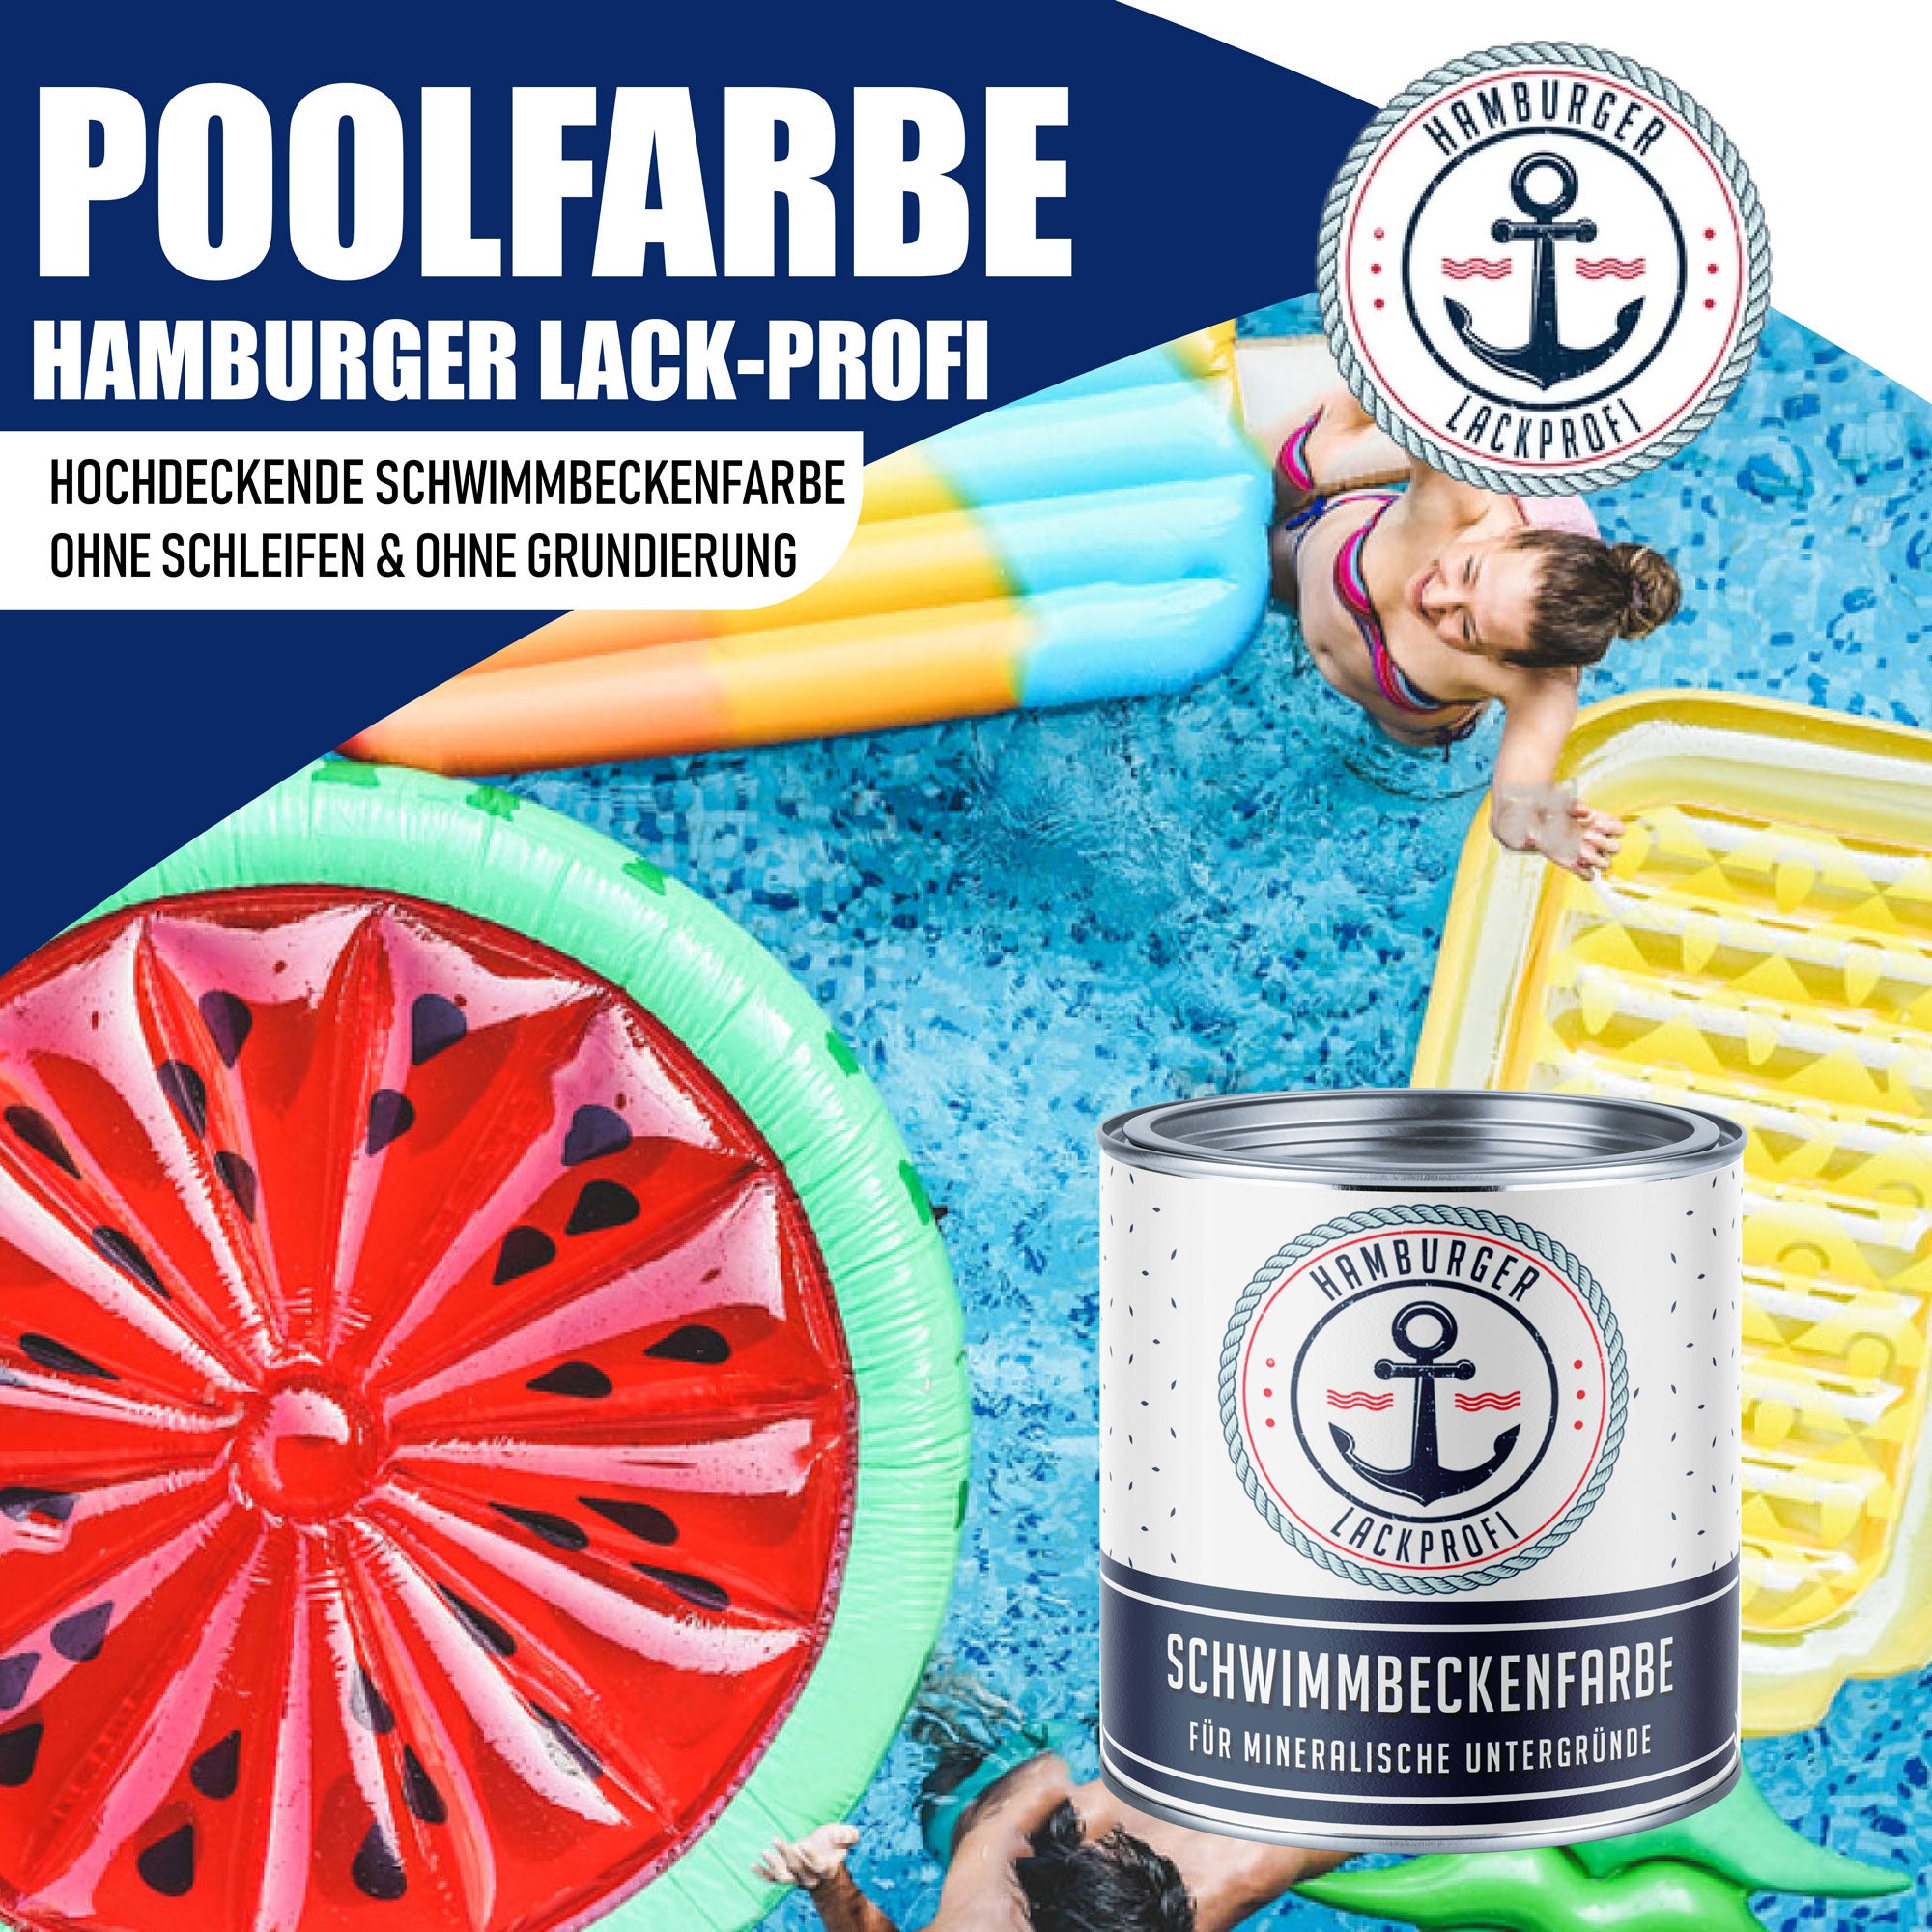 Hamburger Lack-Profi Schwimmbeckenfarbe Honiggelb RAL 1005 - hochdeckende Poolfarbe